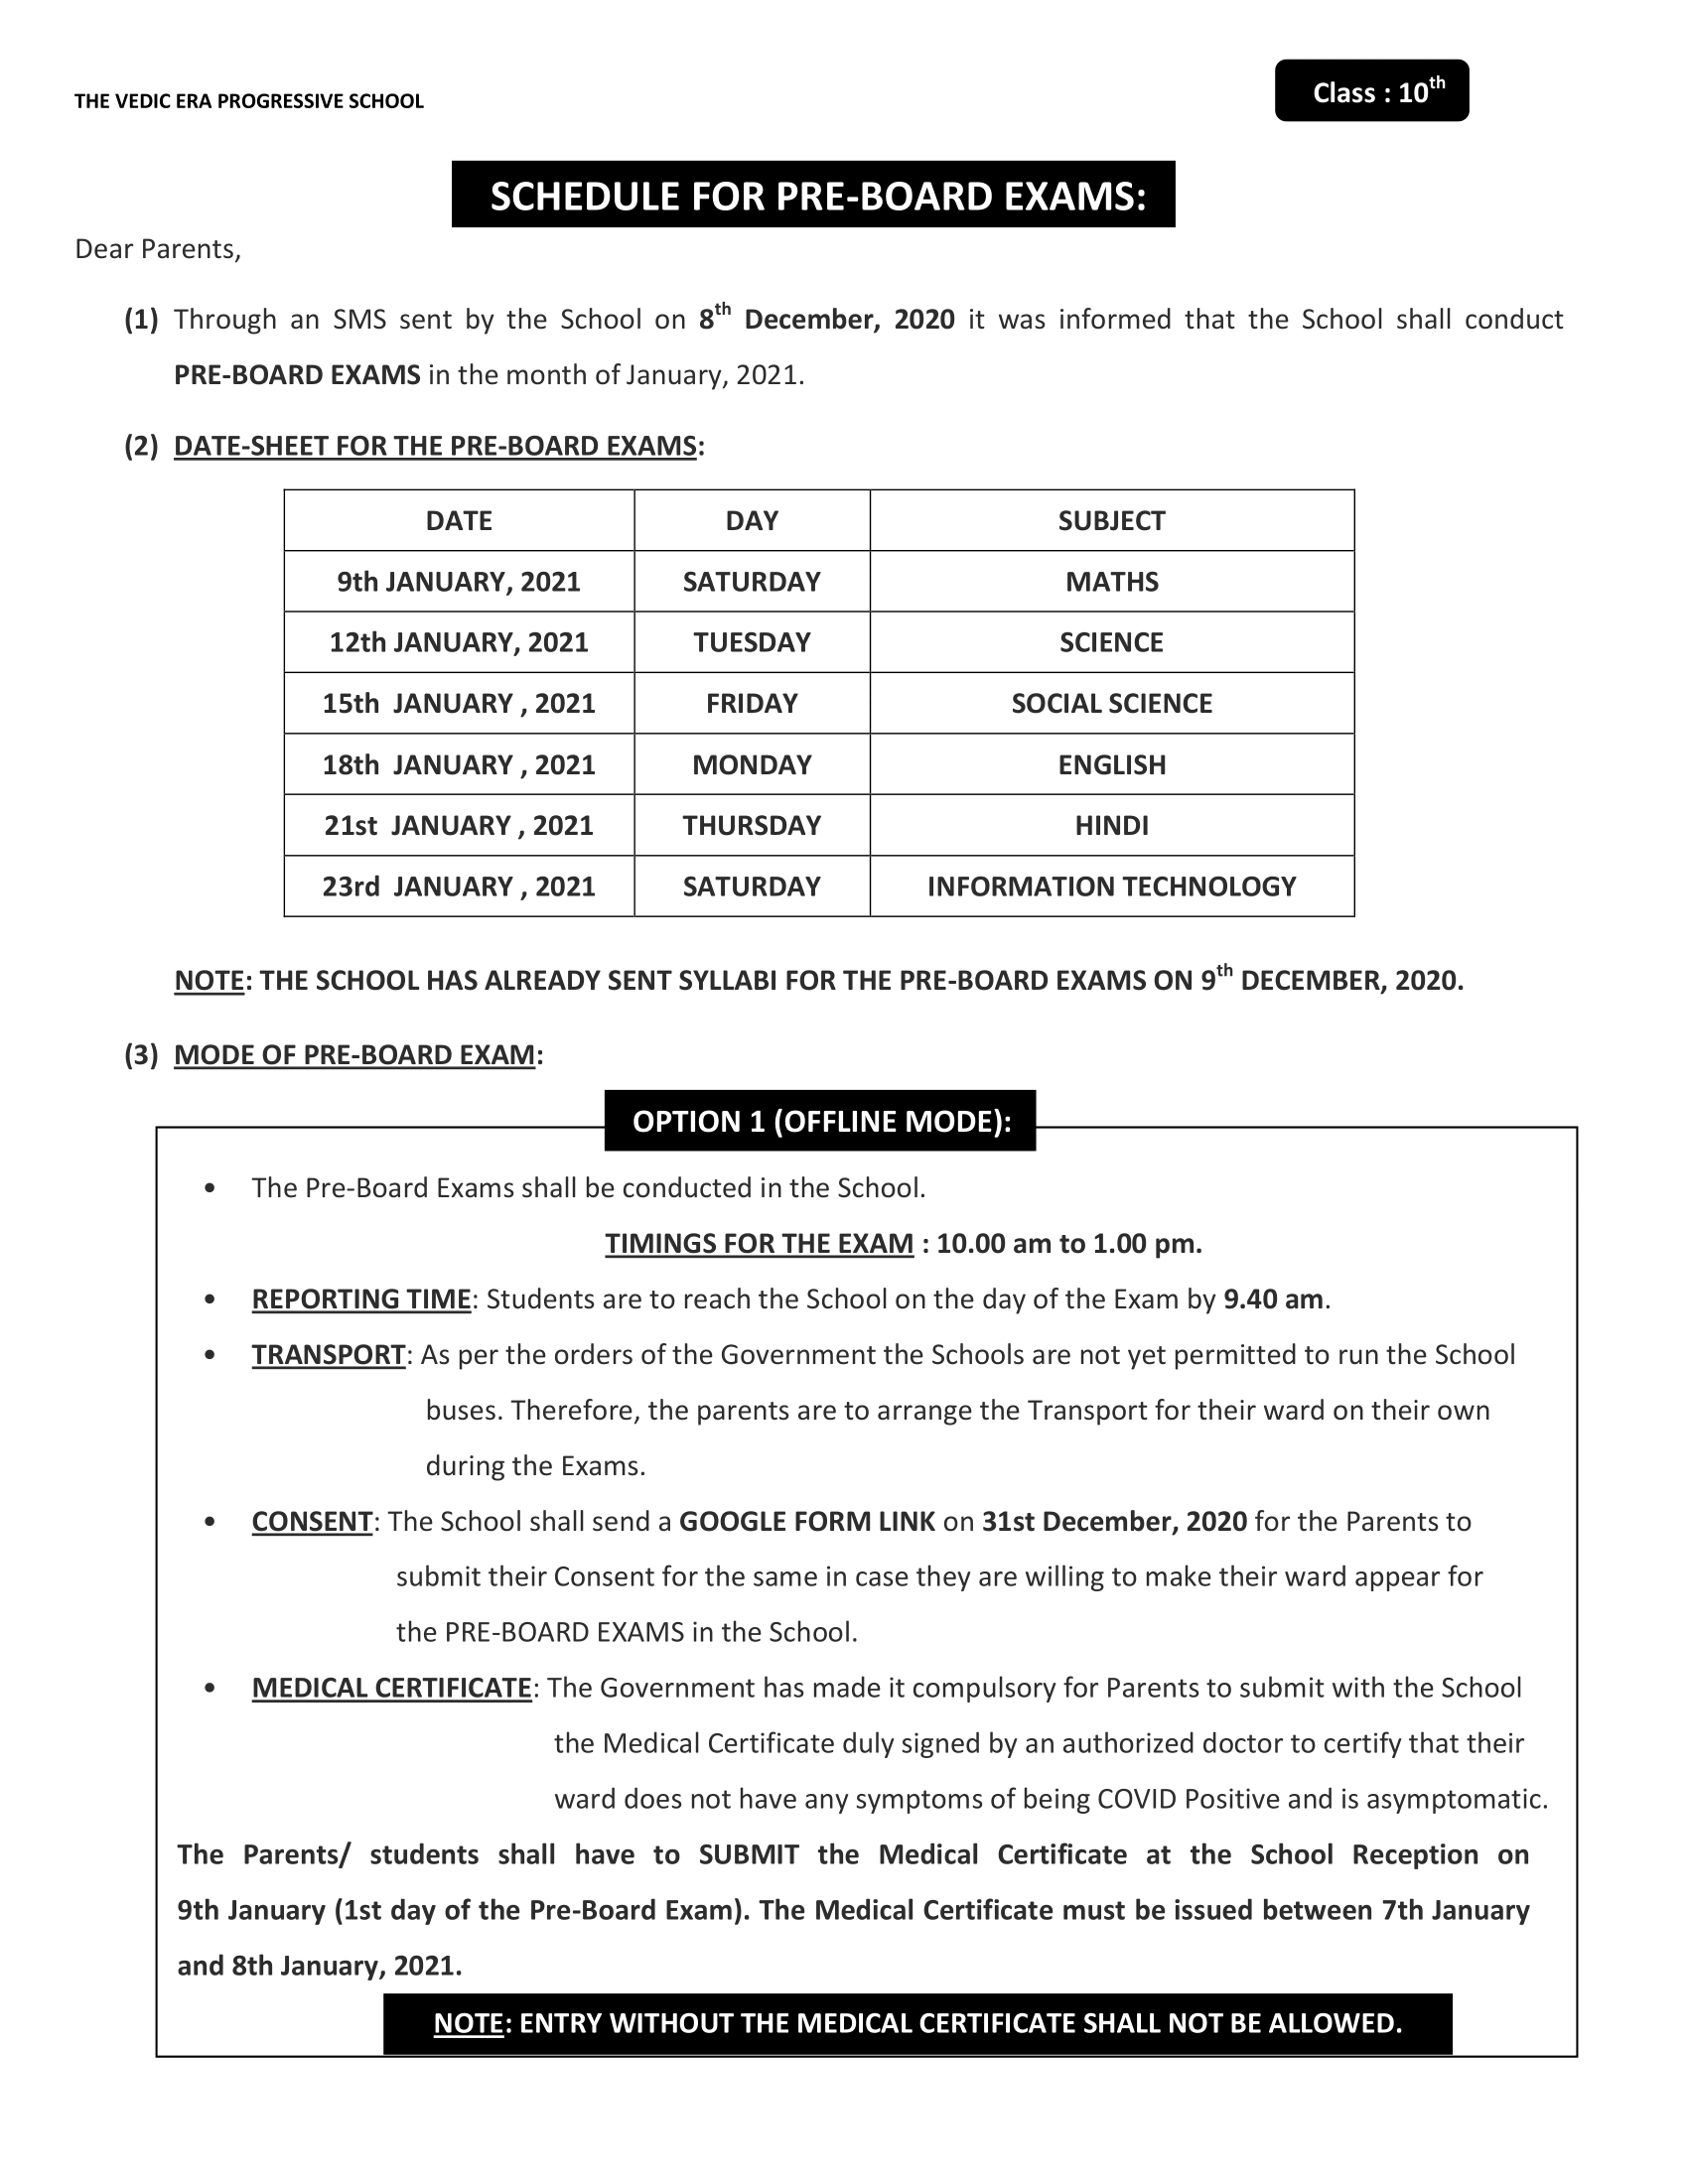 Pre-Board Exam Notice for Class 10th